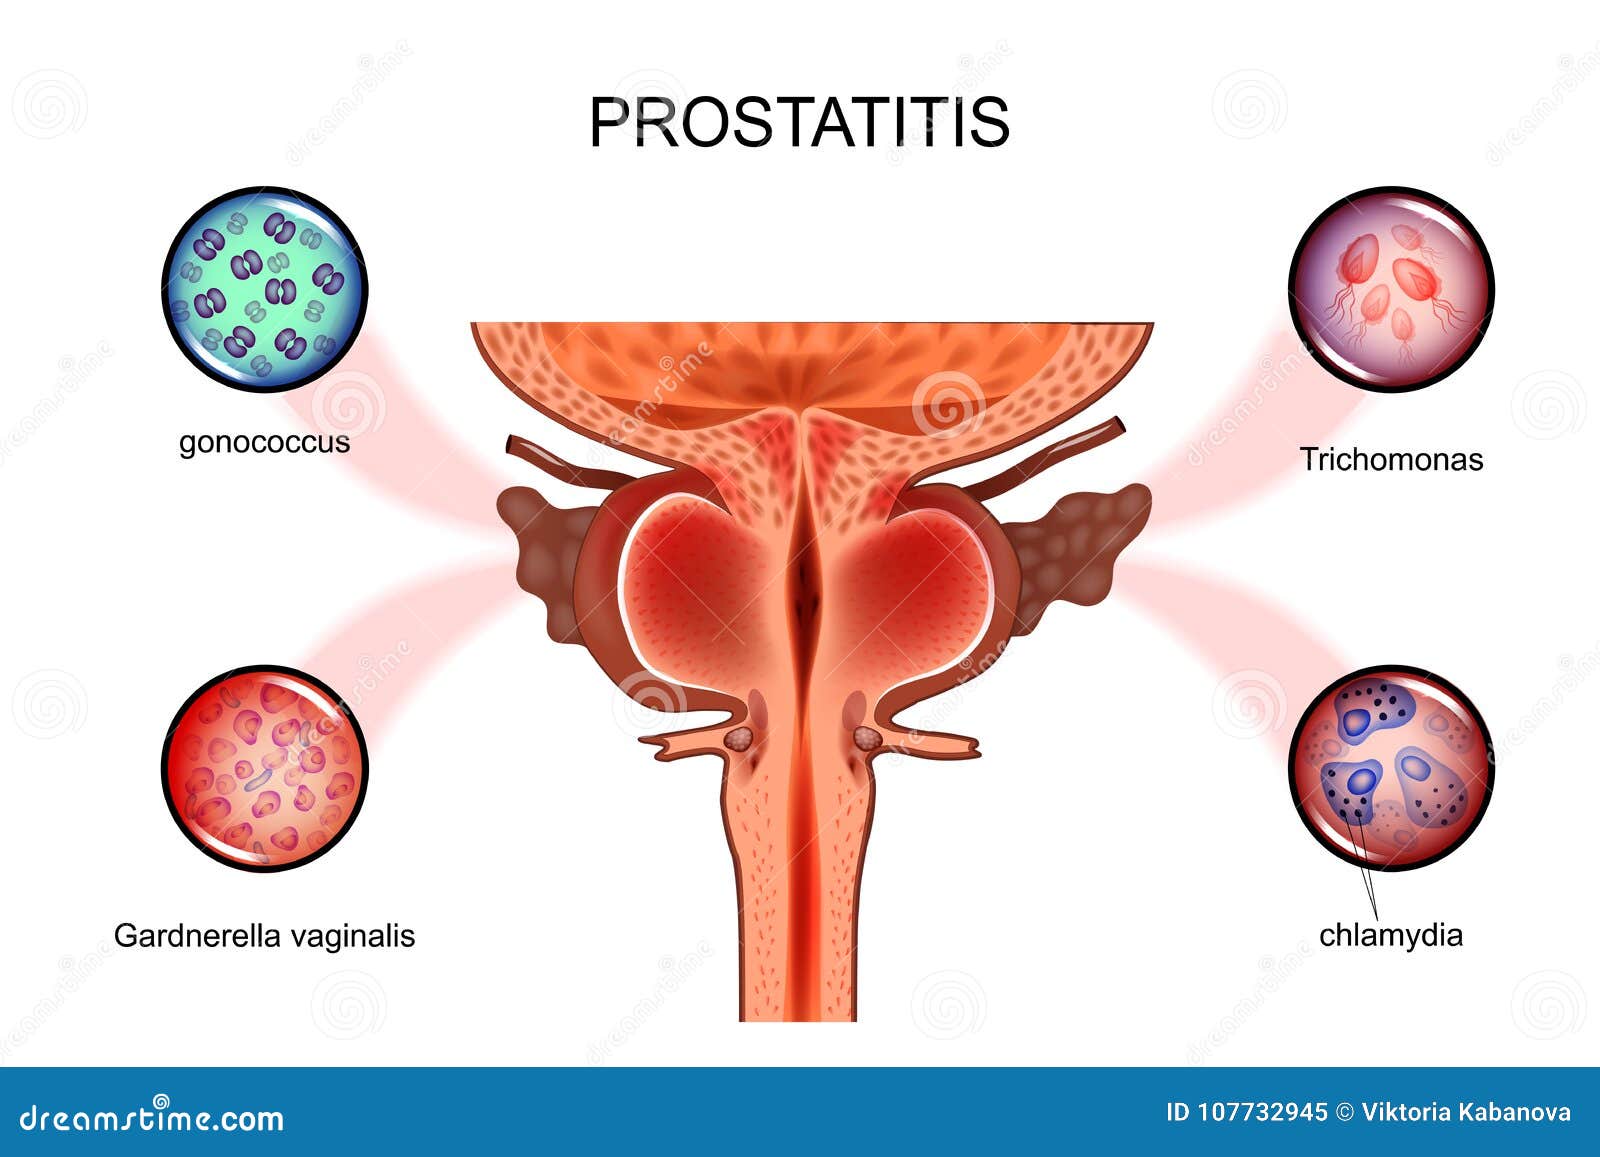 Gentos hatásos prosztatagyulladás esetén Tabletták a prostatitis homeopátiás